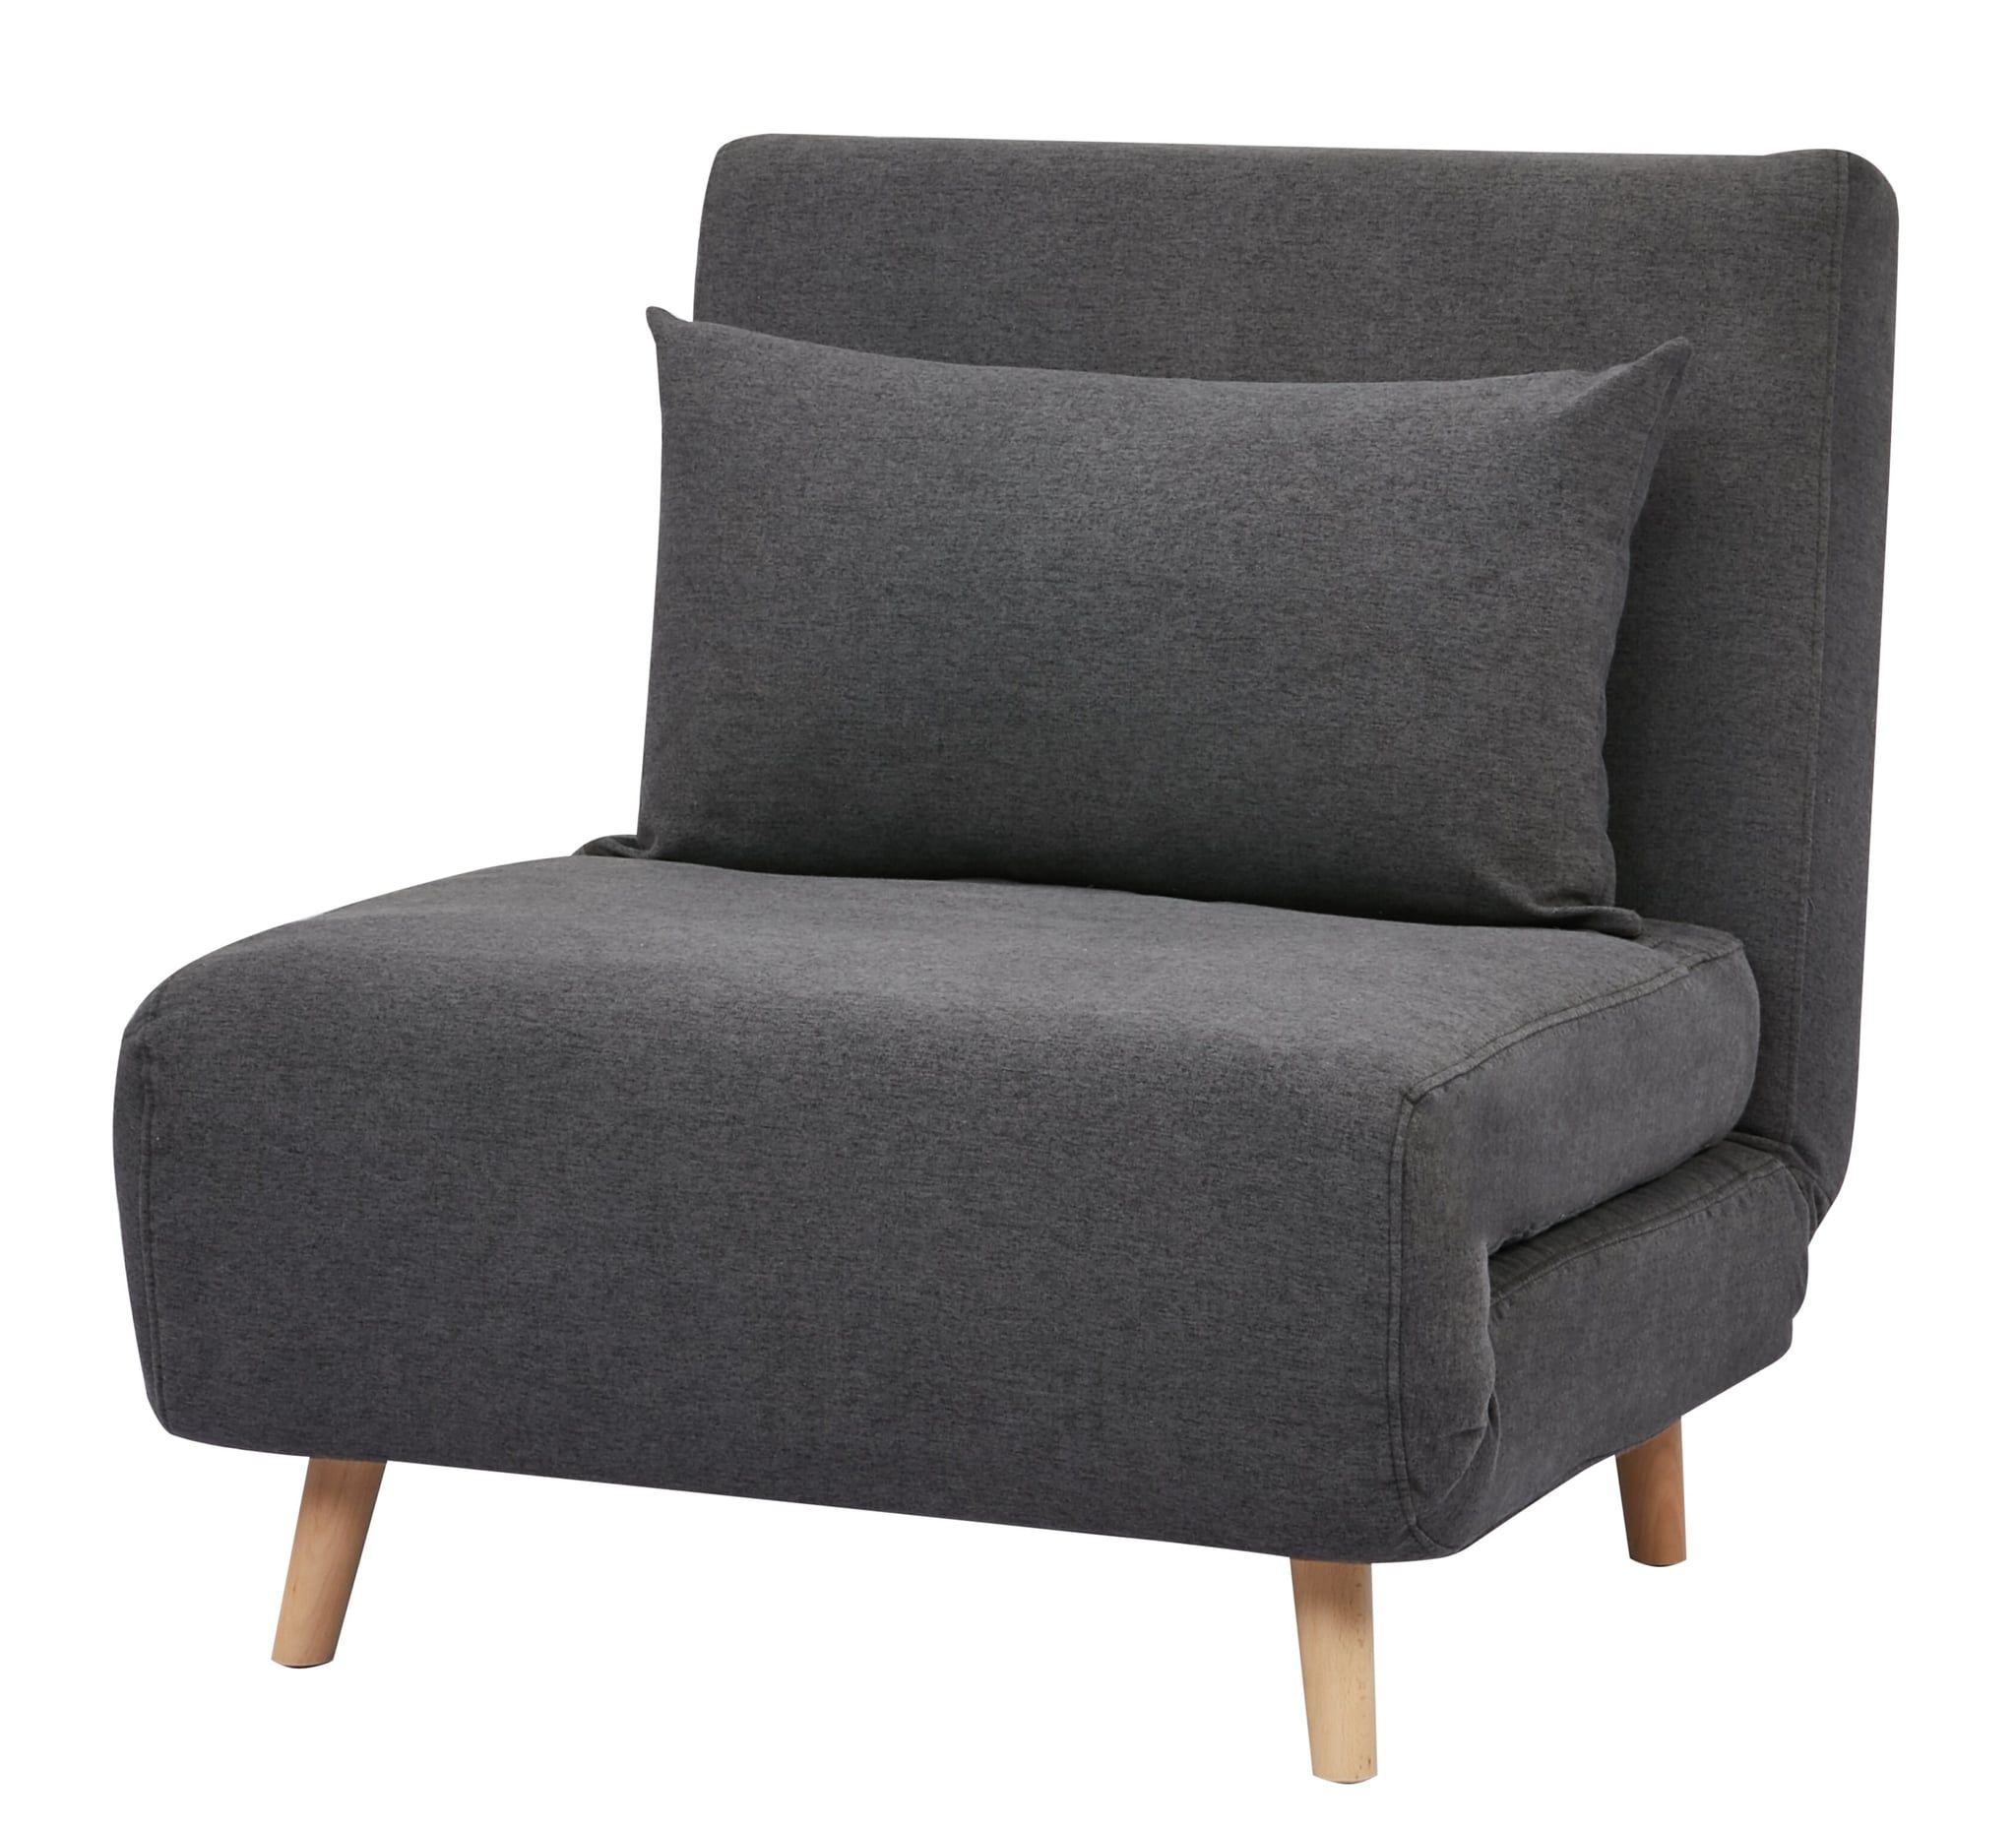 Bolen Convertible Chair | 34 Stunning Furniture Pieces I Can Throughout Bolen Convertible Chairs (View 3 of 15)